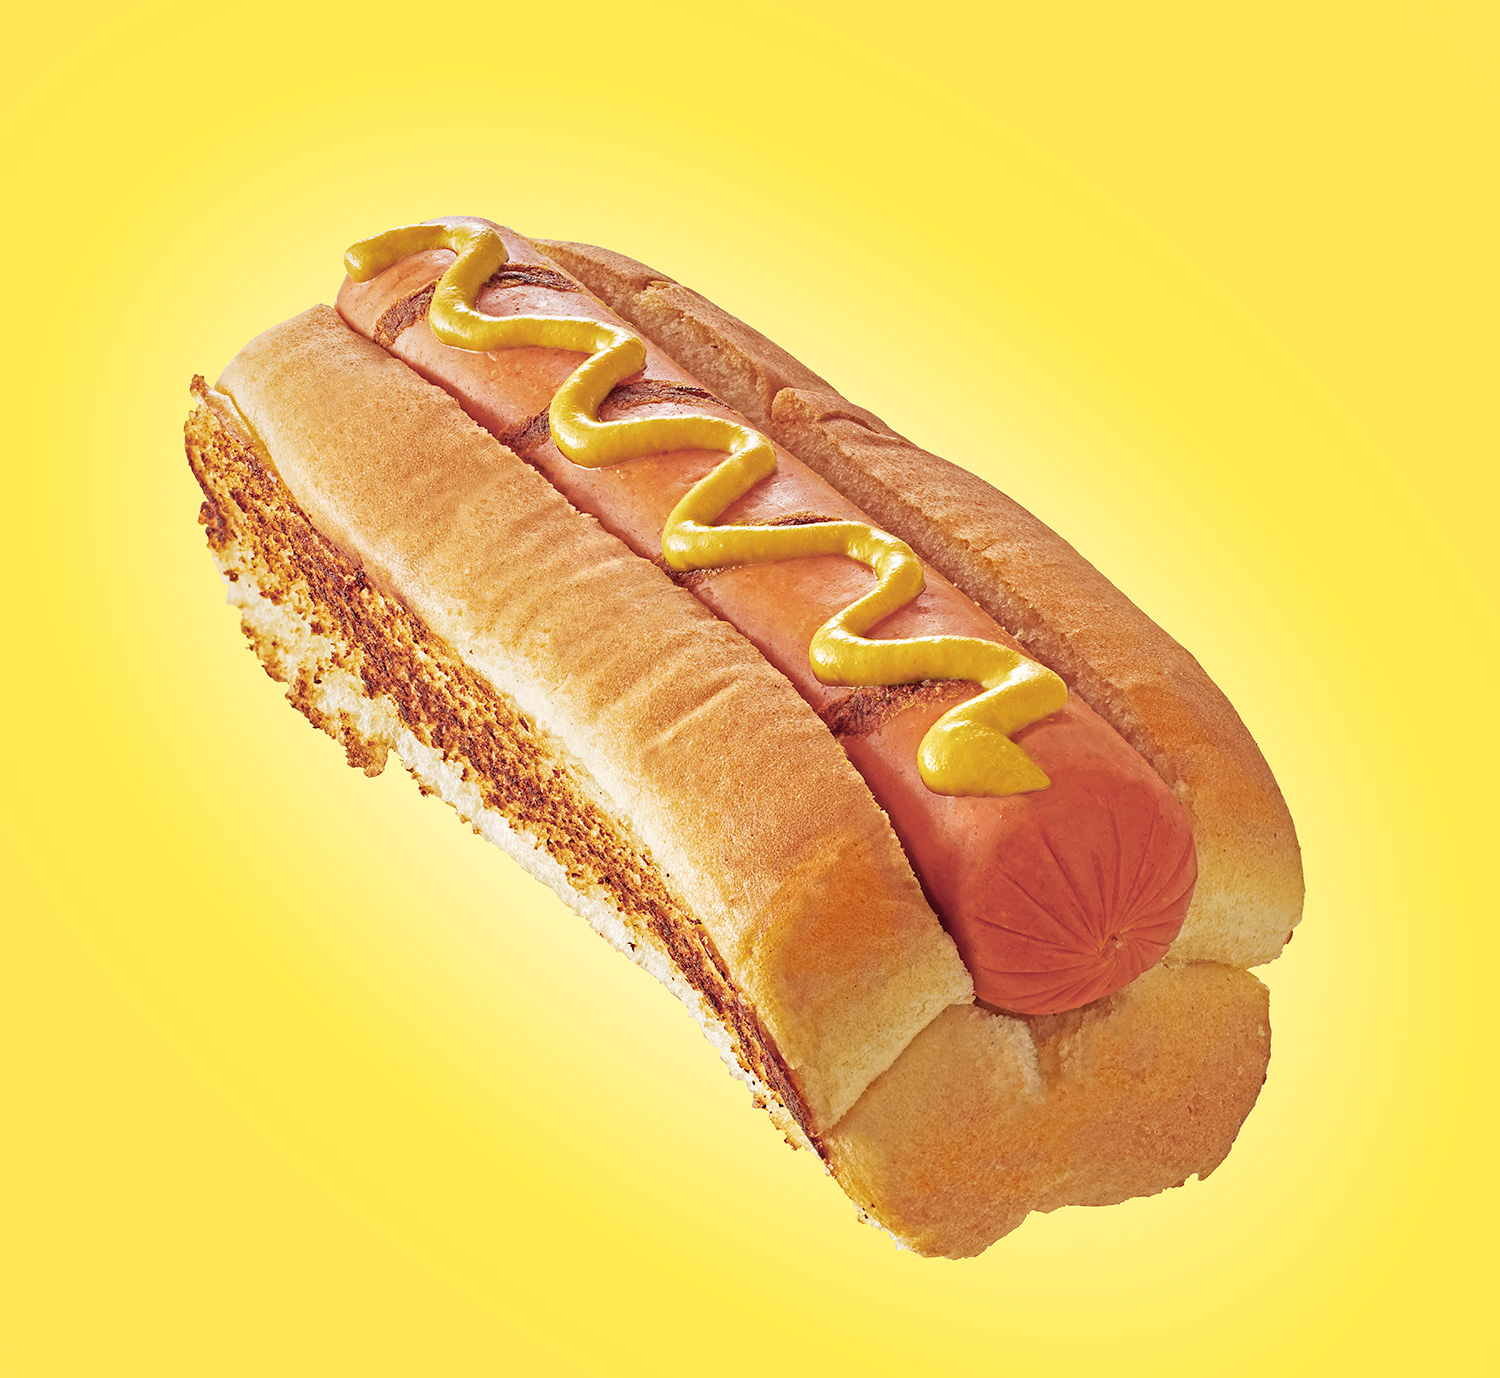 Hotdog- Perfect hot dog- Top dog- Henrique Du Tiel